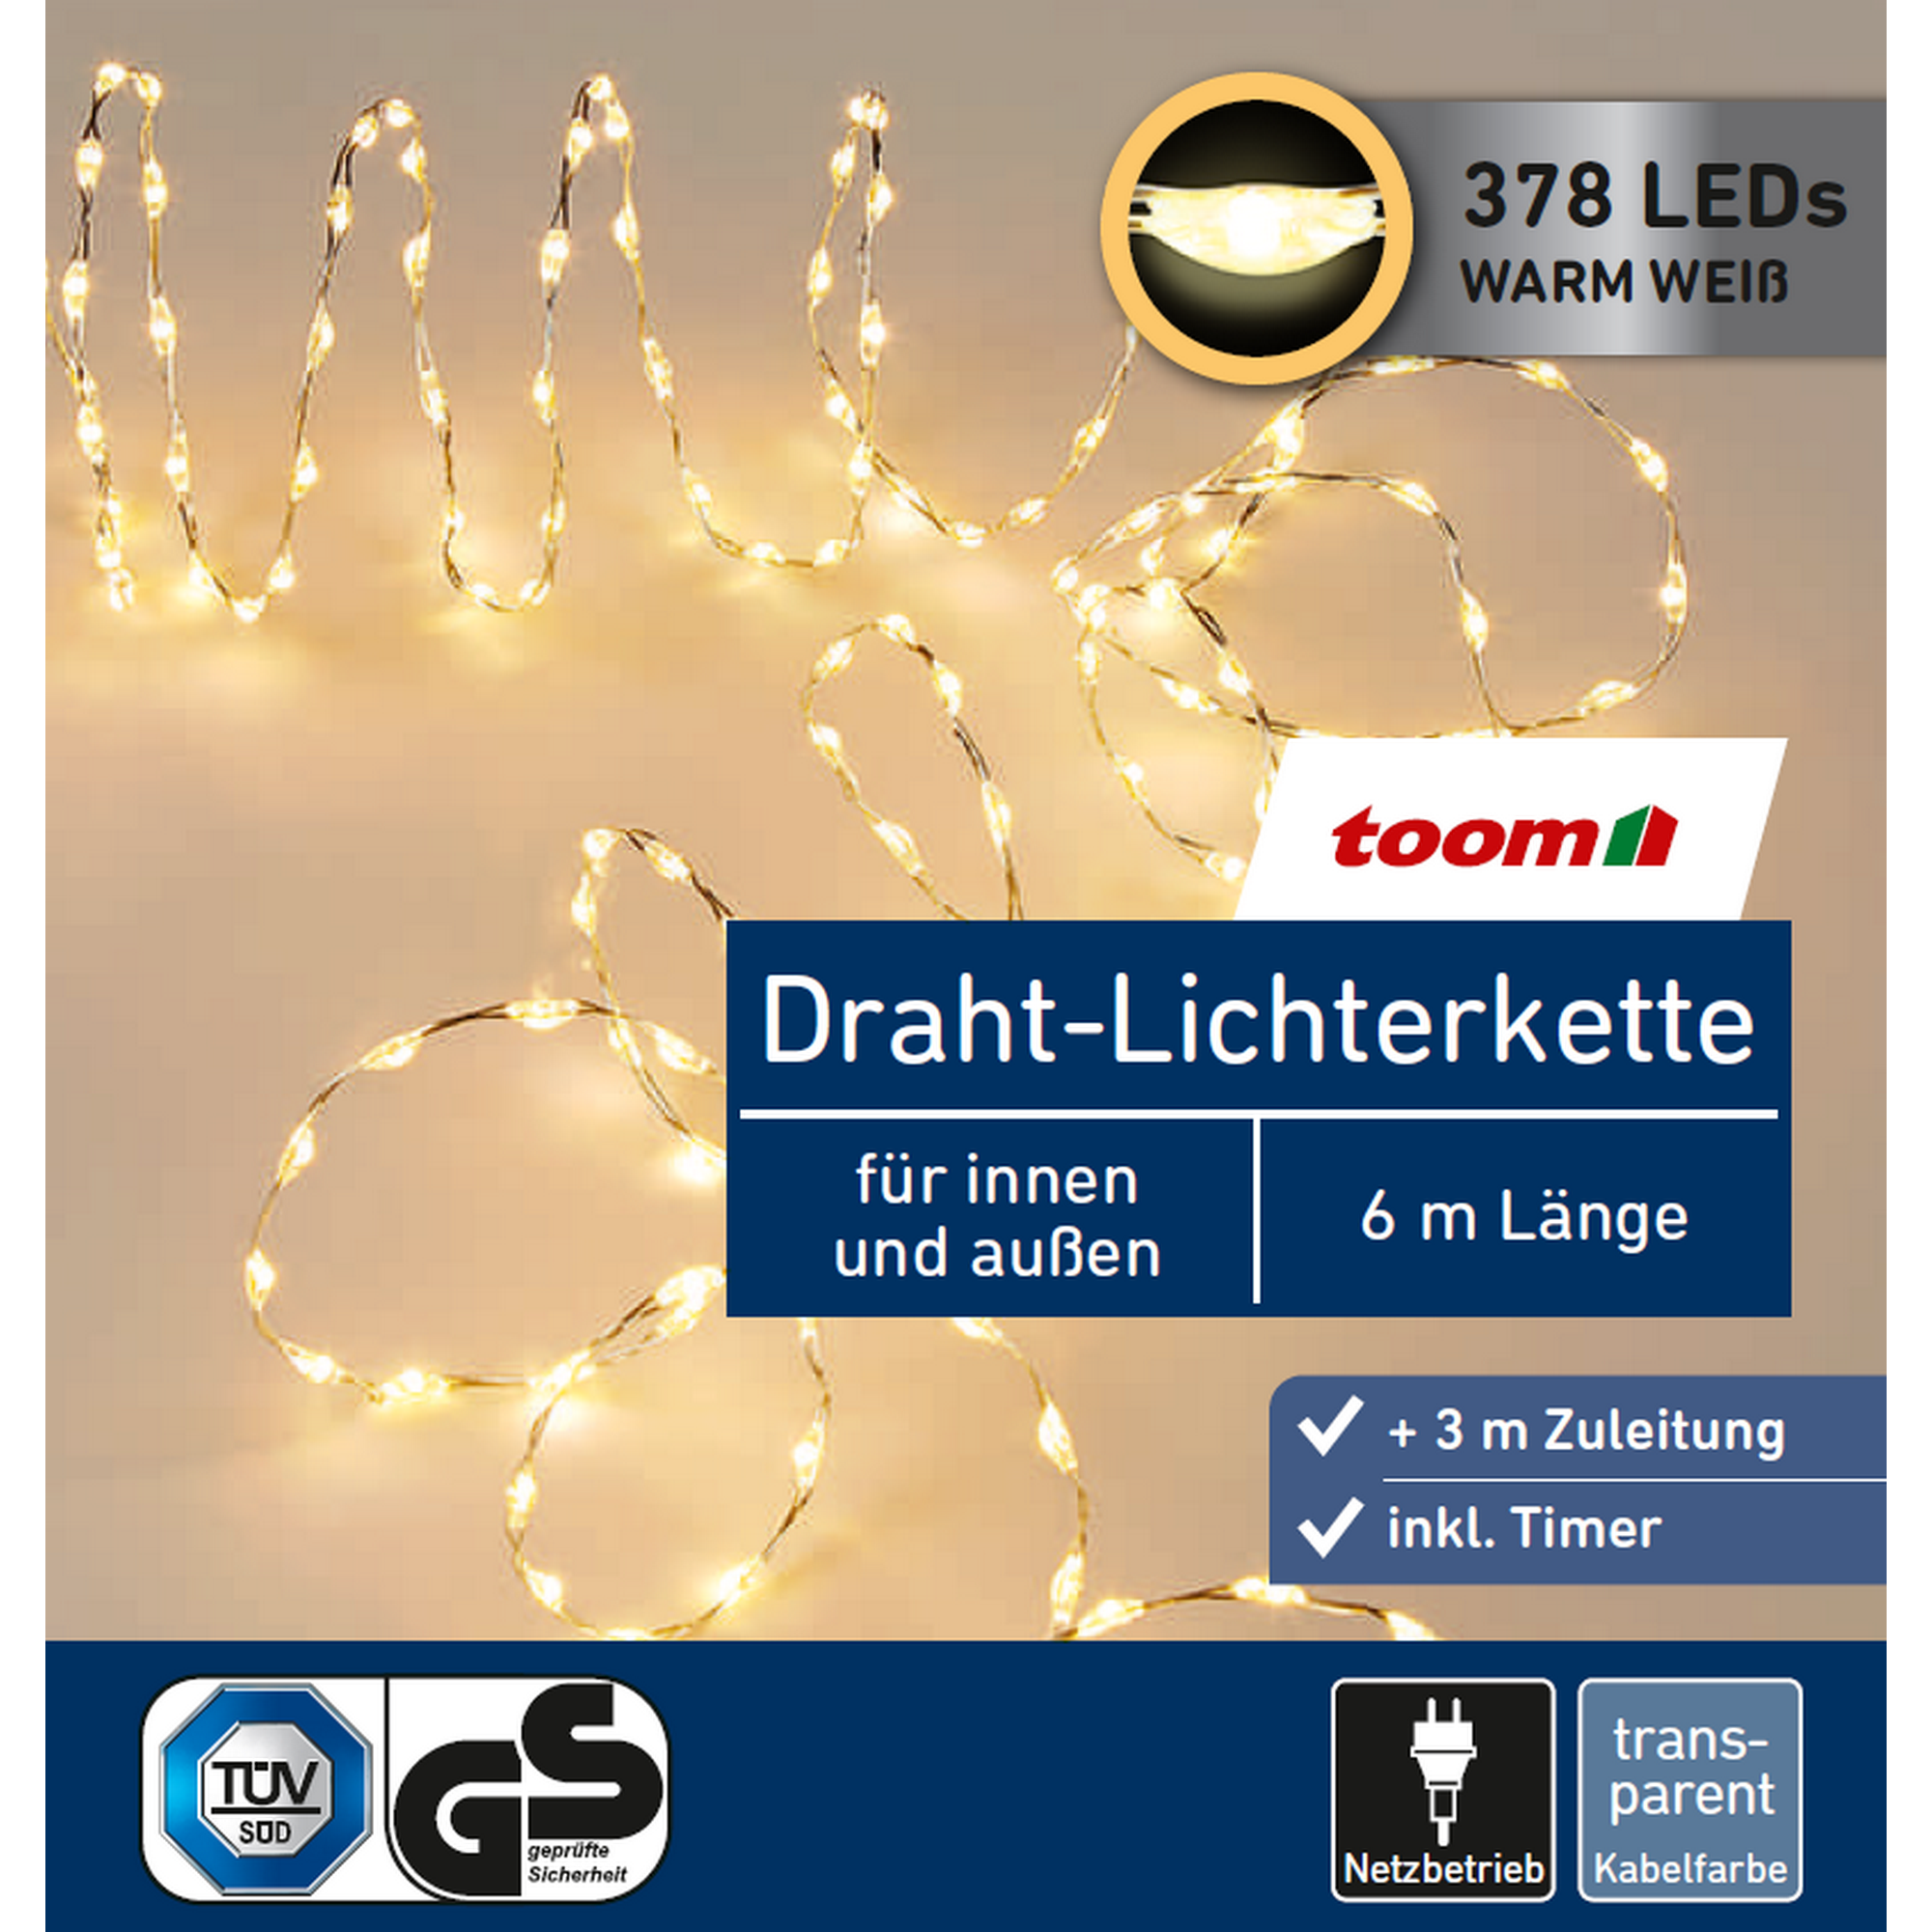 LED-Draht-Lichterkette 378 LEDs warmweiß 600 cm + product picture